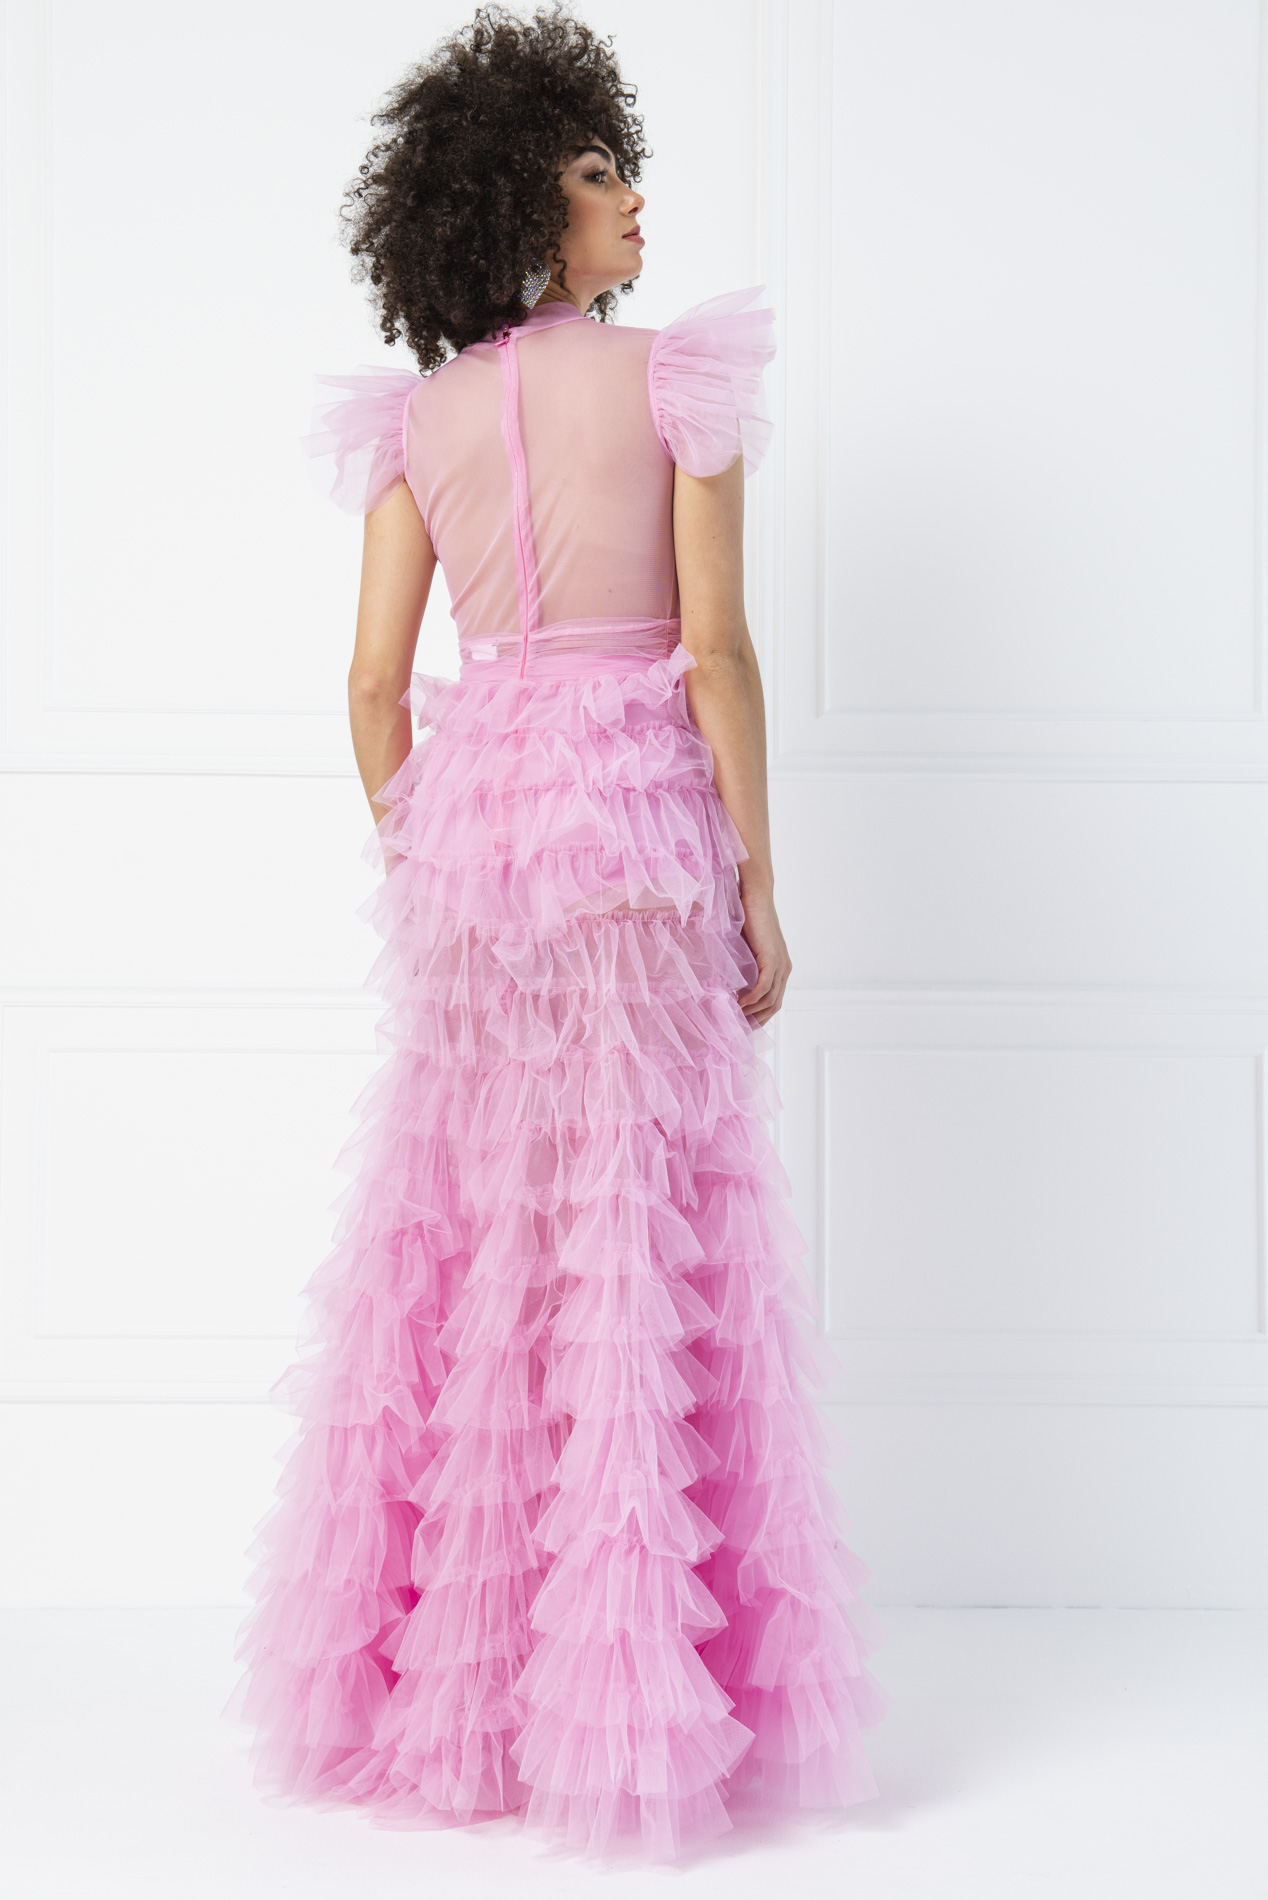 Tulle Detail Transparan Pink Long Dress